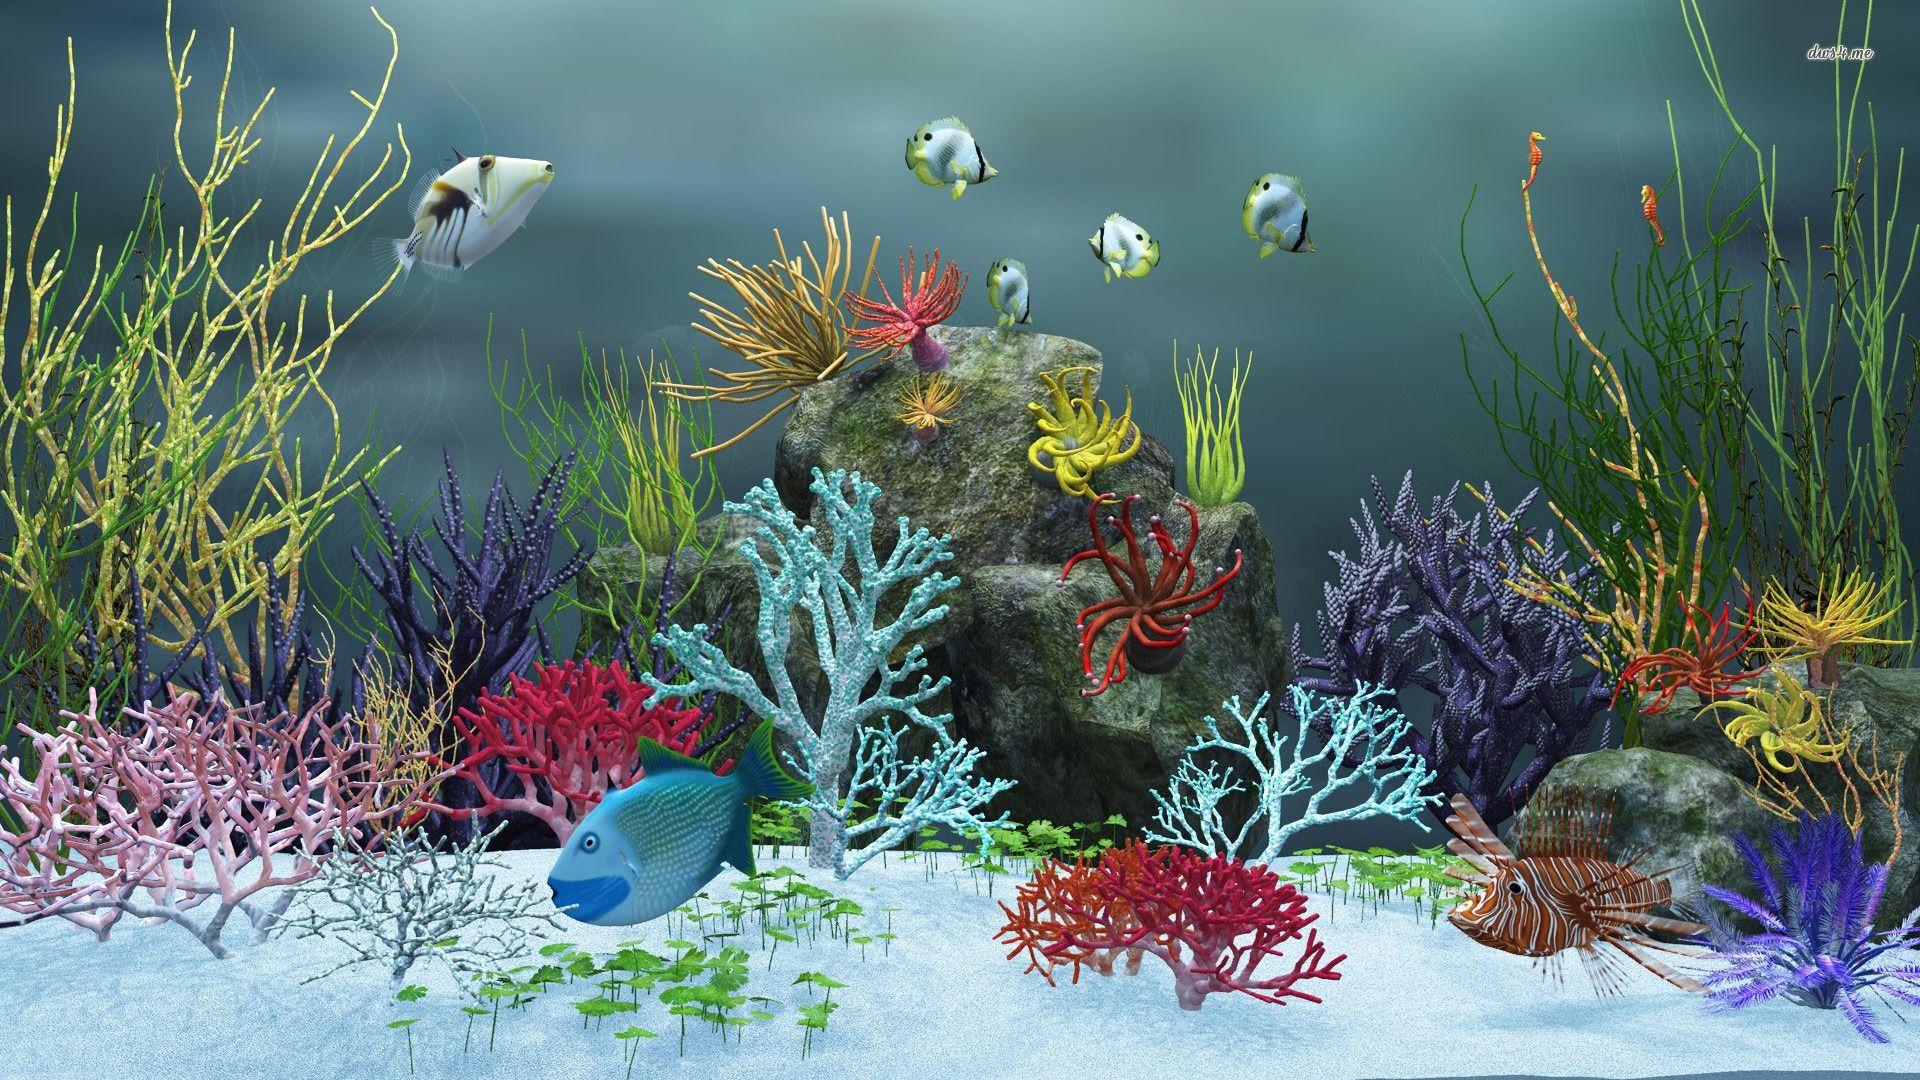 Aquarium wallpaper - Digital Art wallpapers - #12964